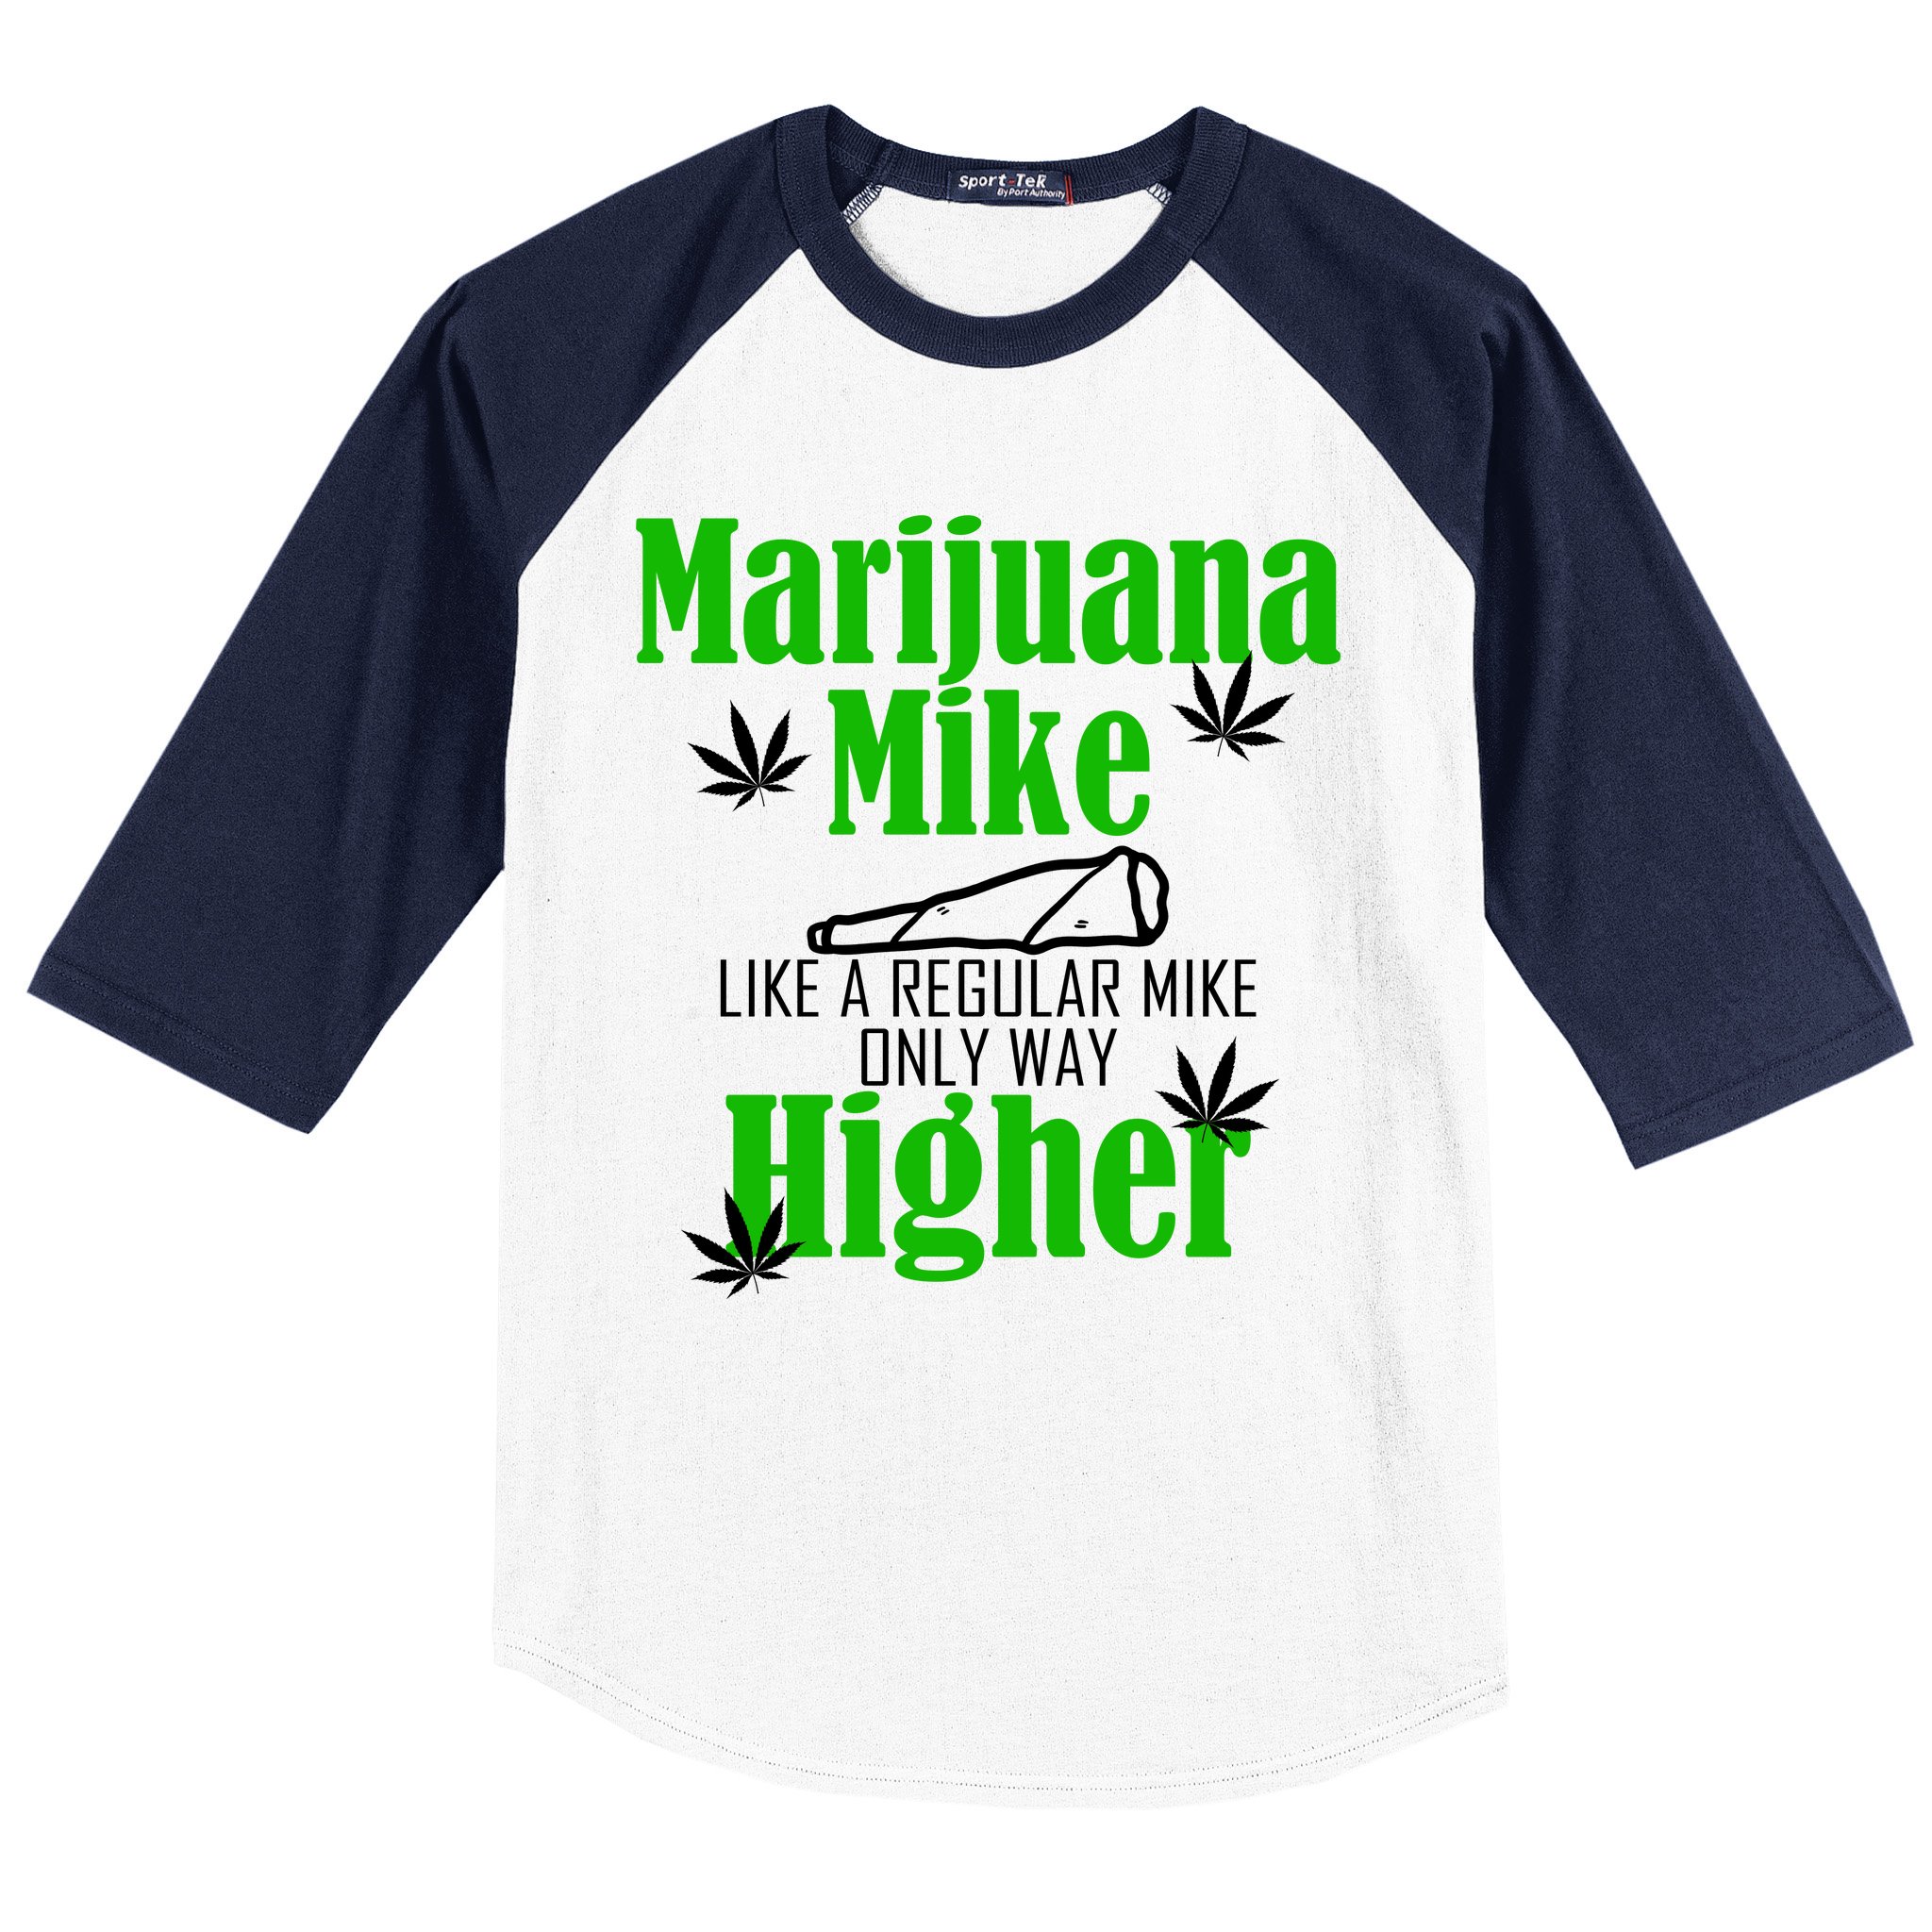 ADDICTED T-shirt Adult Humor Marijuana 420 Cannabis Weed Tee Mens S-3XL New 